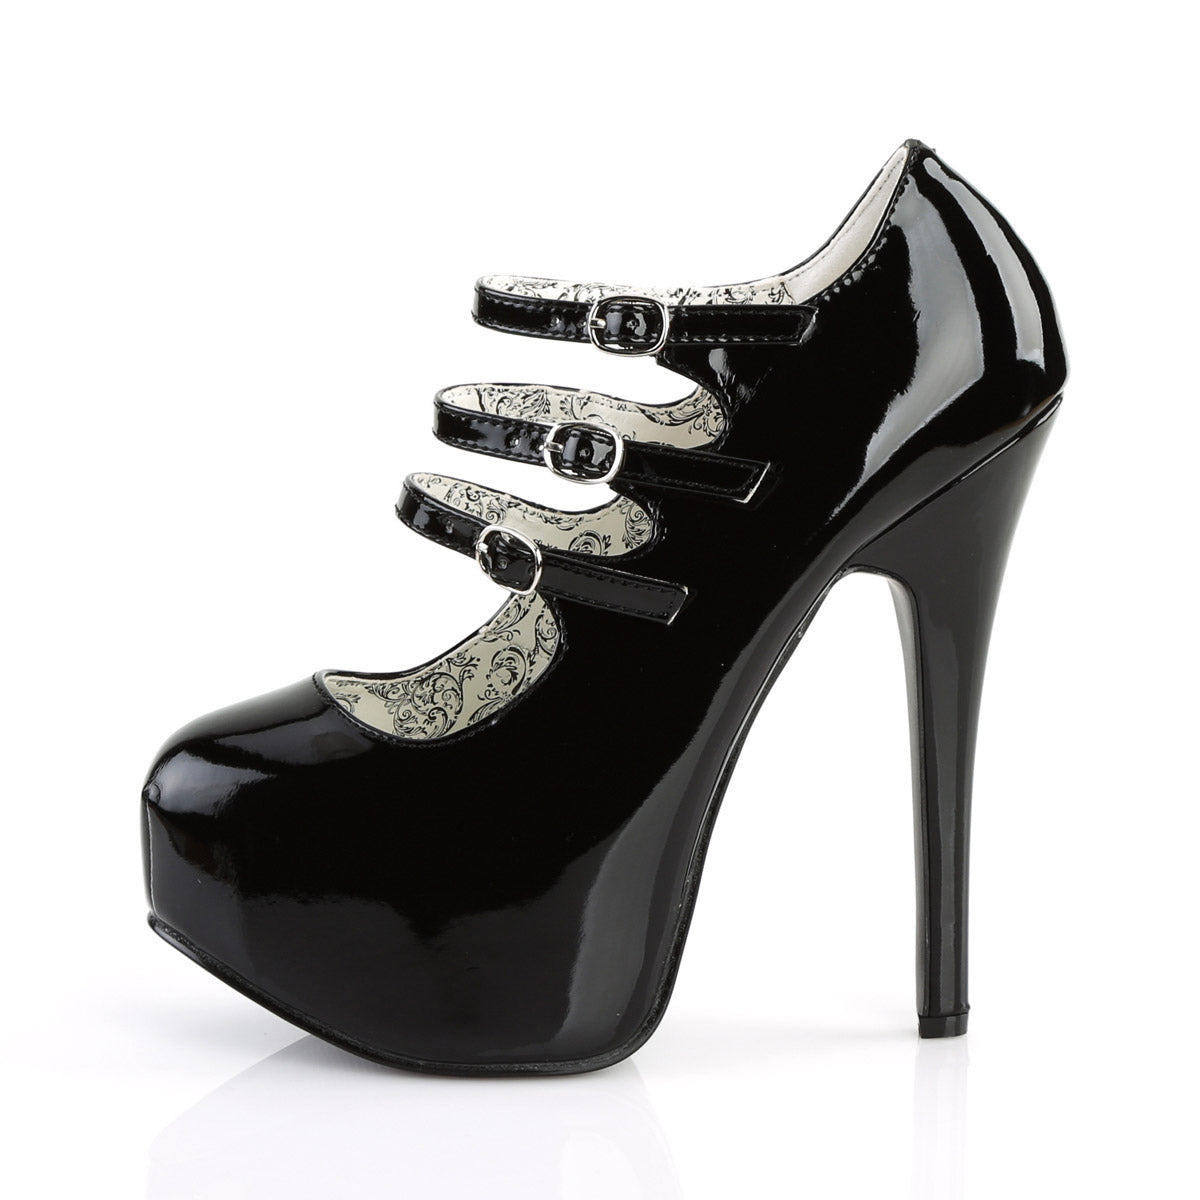 Ankle Strap Black Patent Hidden Platform | Platform high heel shoes, Heels, High  heels